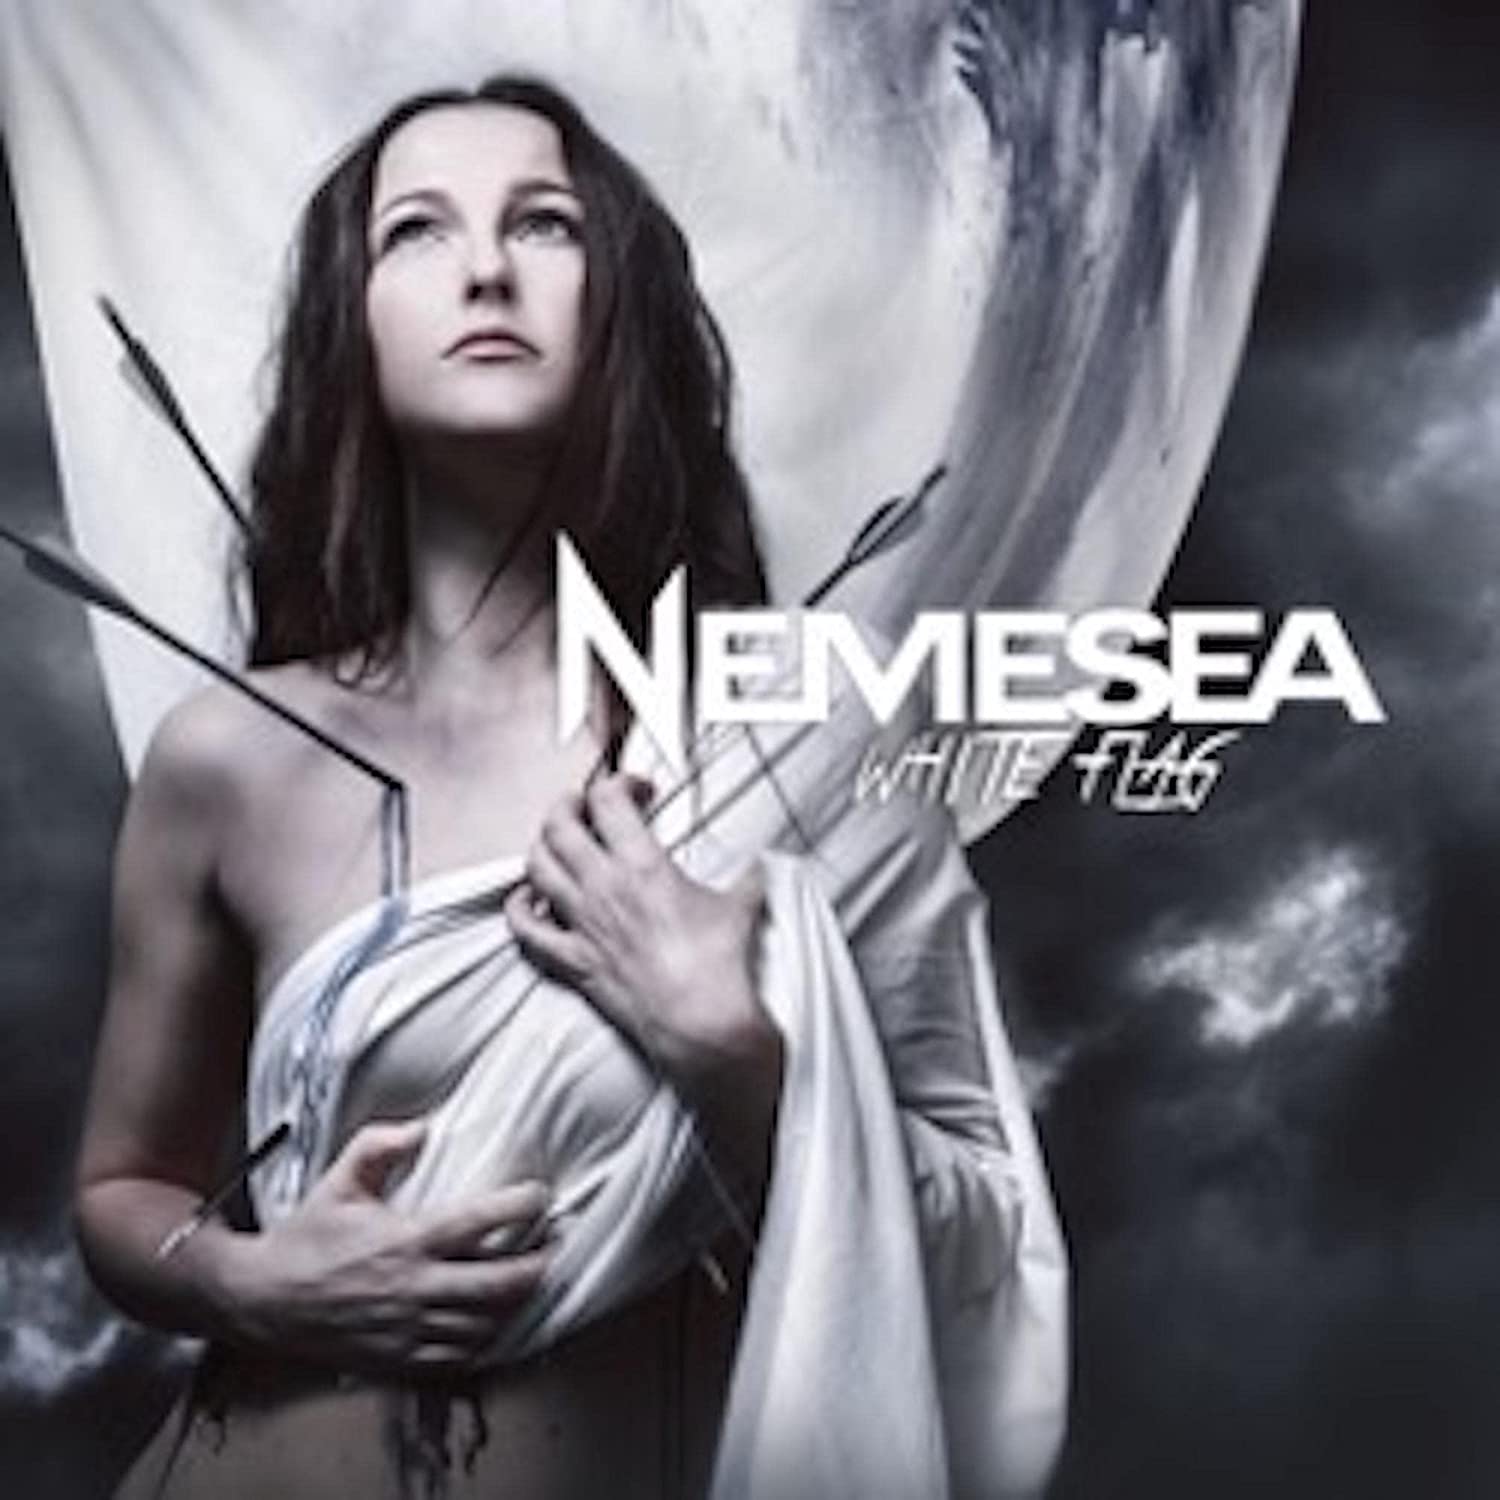 Nemesea White Flag cover artwork